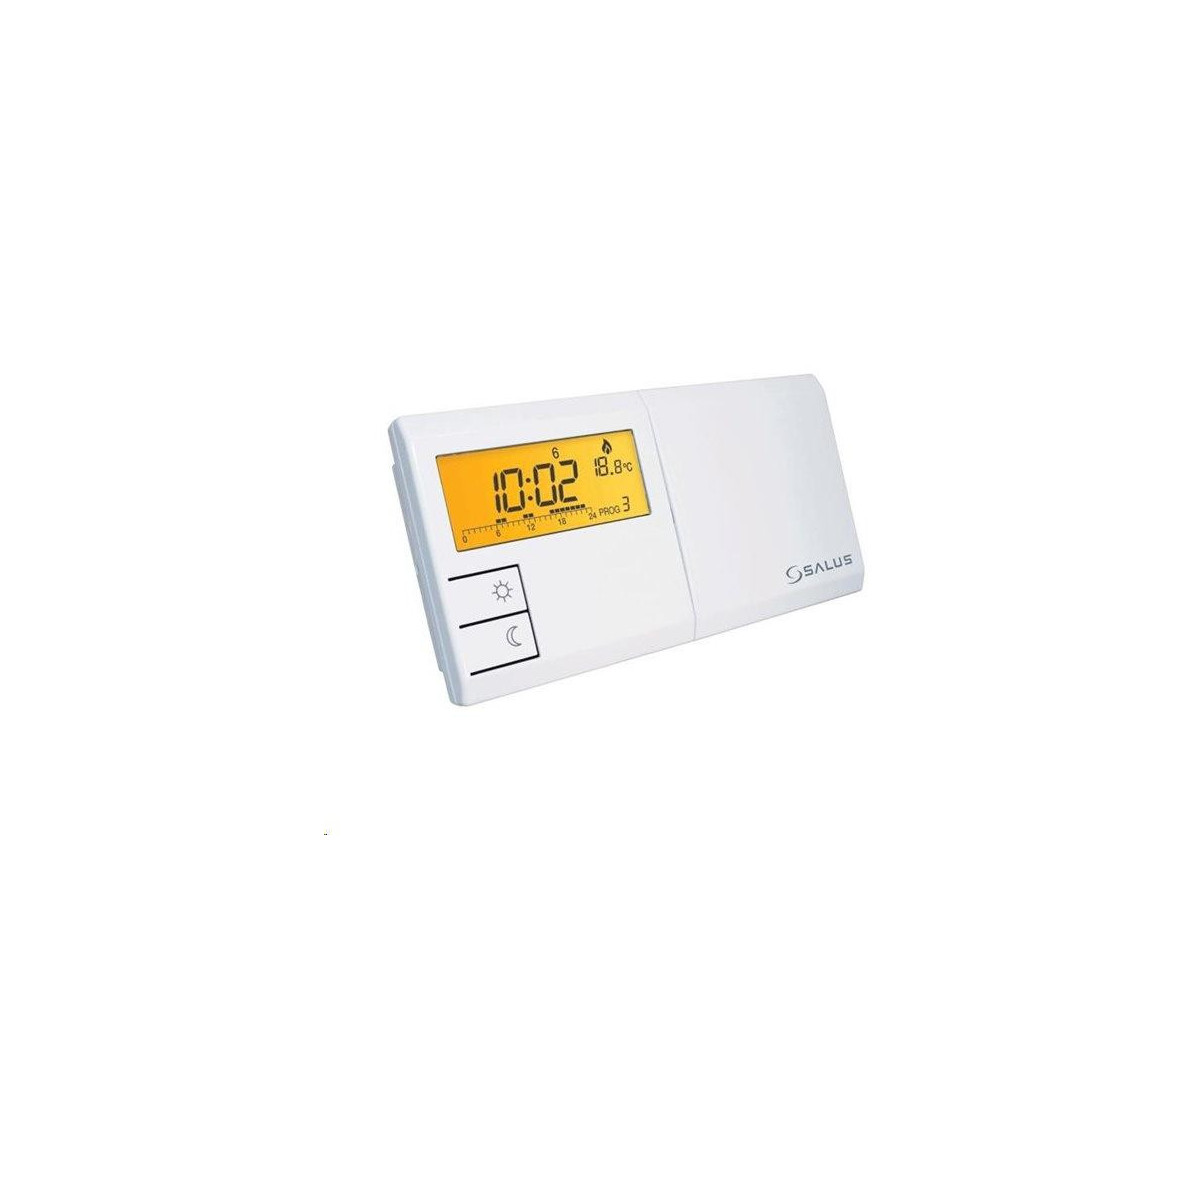 SALUS 091FLRF týdenní programovatelný termostat